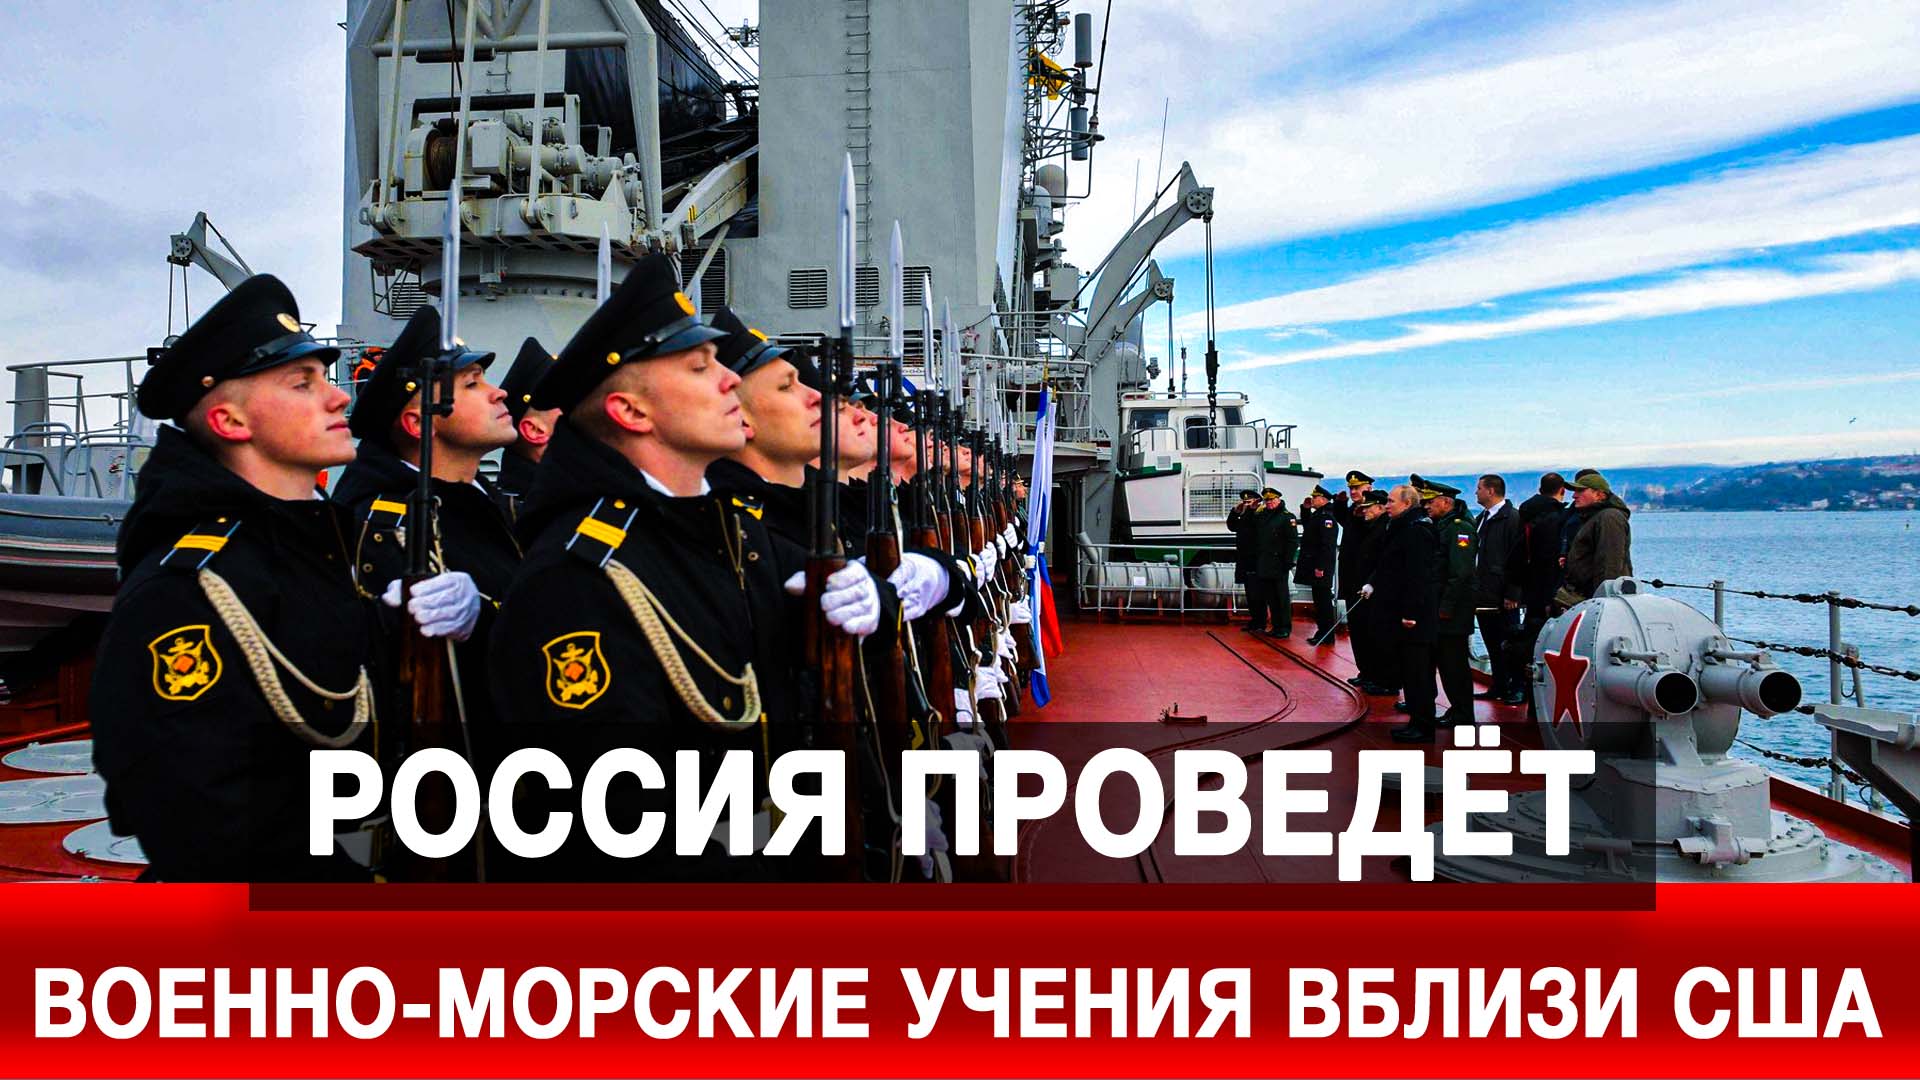 Россия проведёт военно-морские учения вблизи США